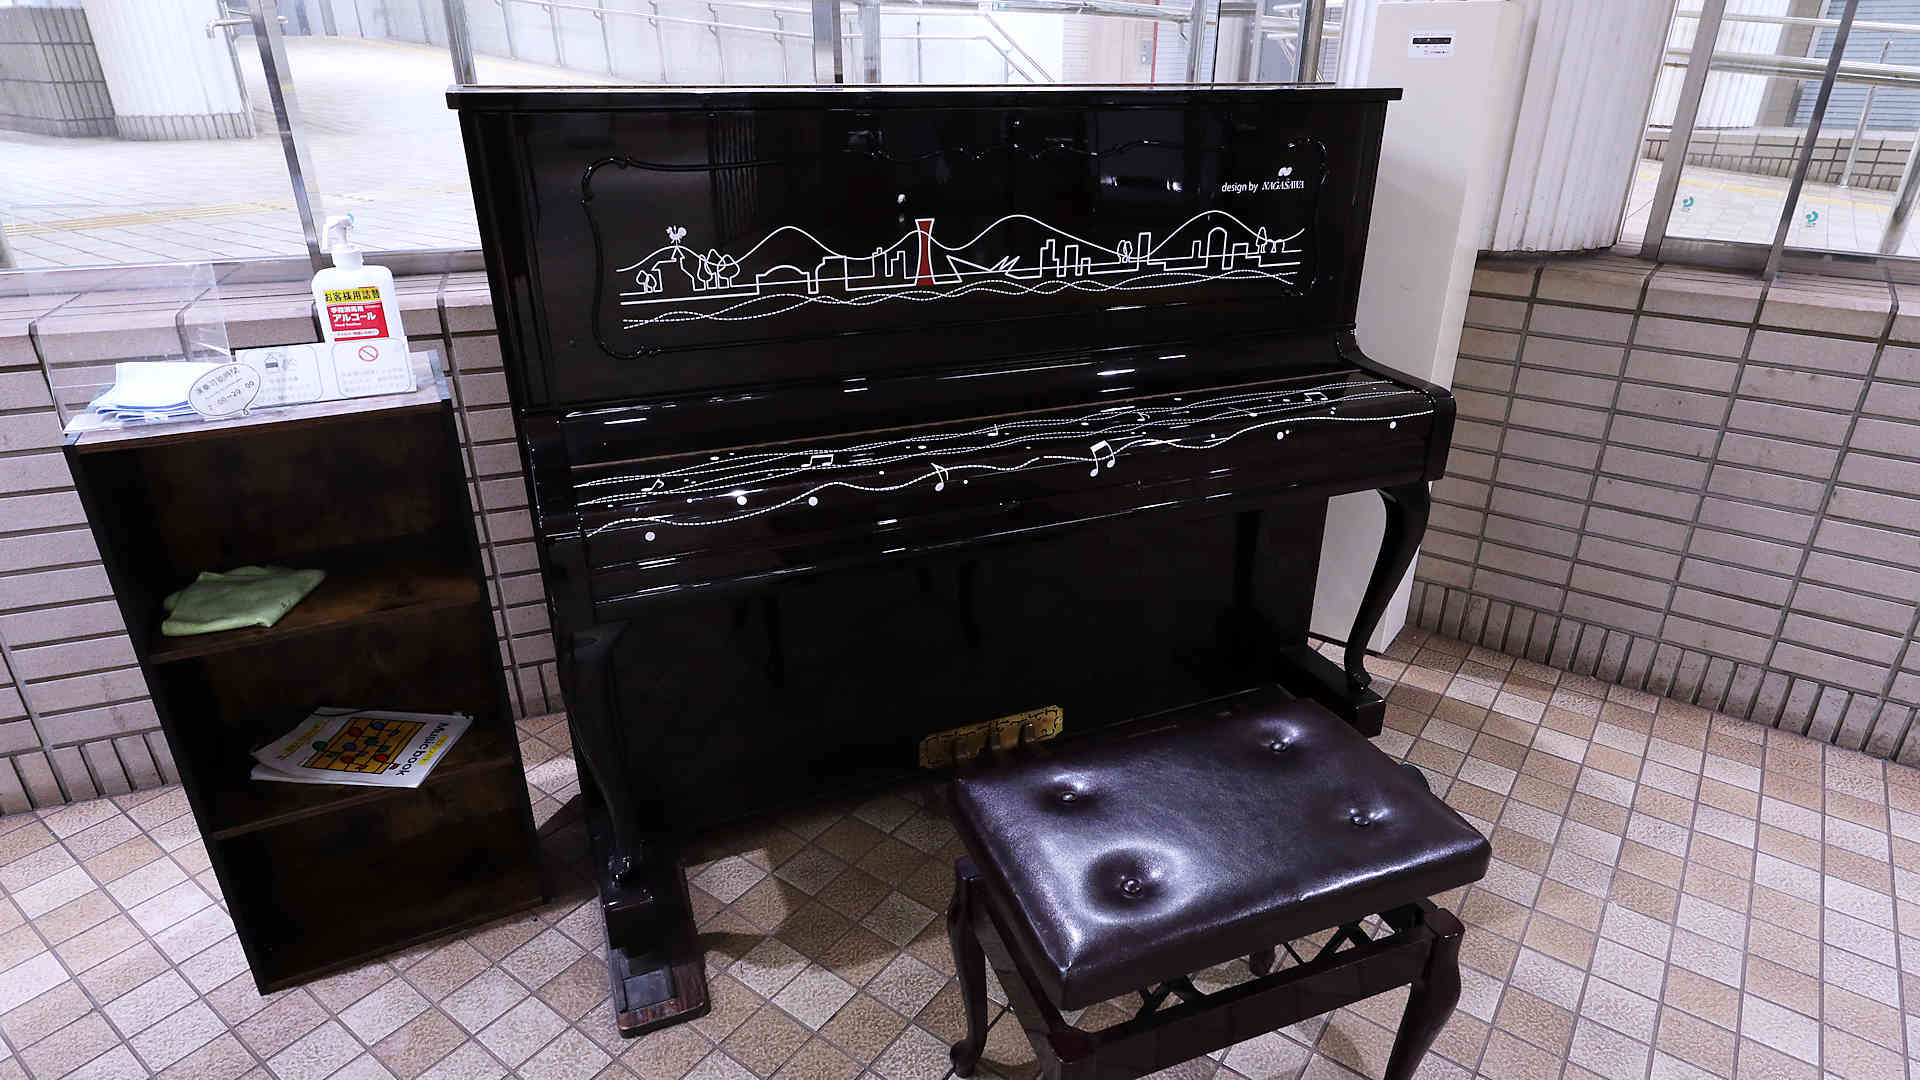 神戸市営地下鉄にあるストリートピアノには神戸の風景が描かれています